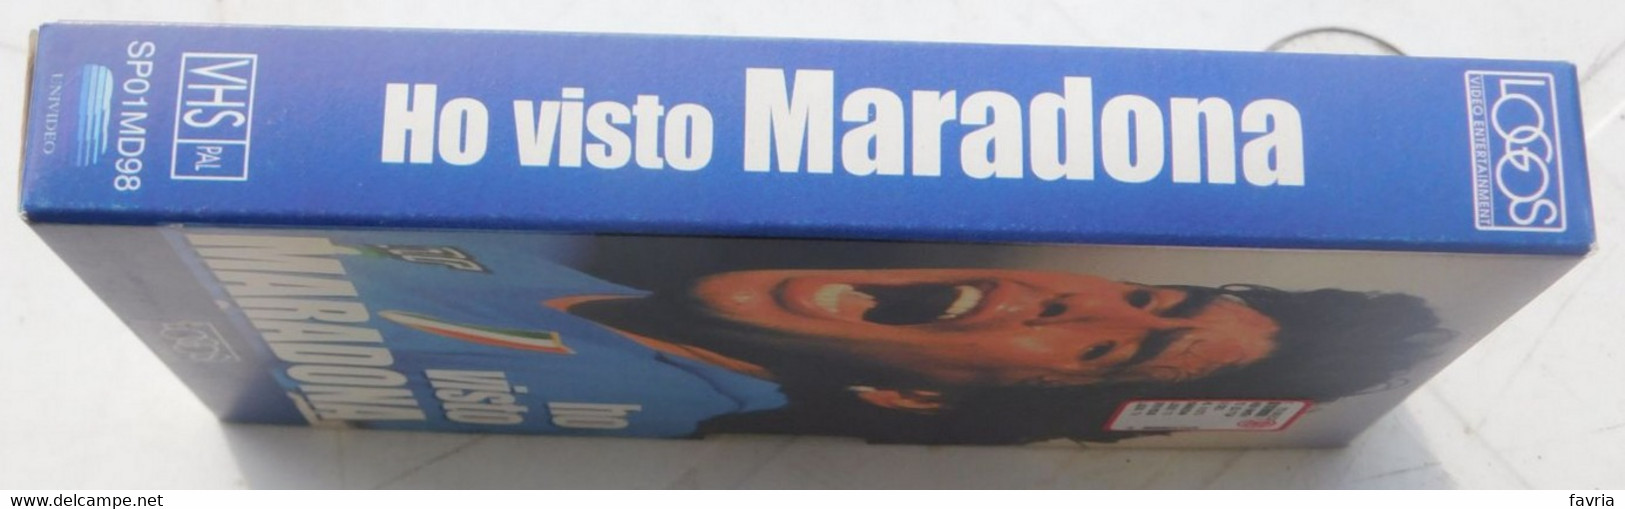 VHS - Ho Visto  MARADONA (Napoli) # Logos, 1998 # 65 Minuti - Immagini Pubbliche E Private Inedite - Deporte